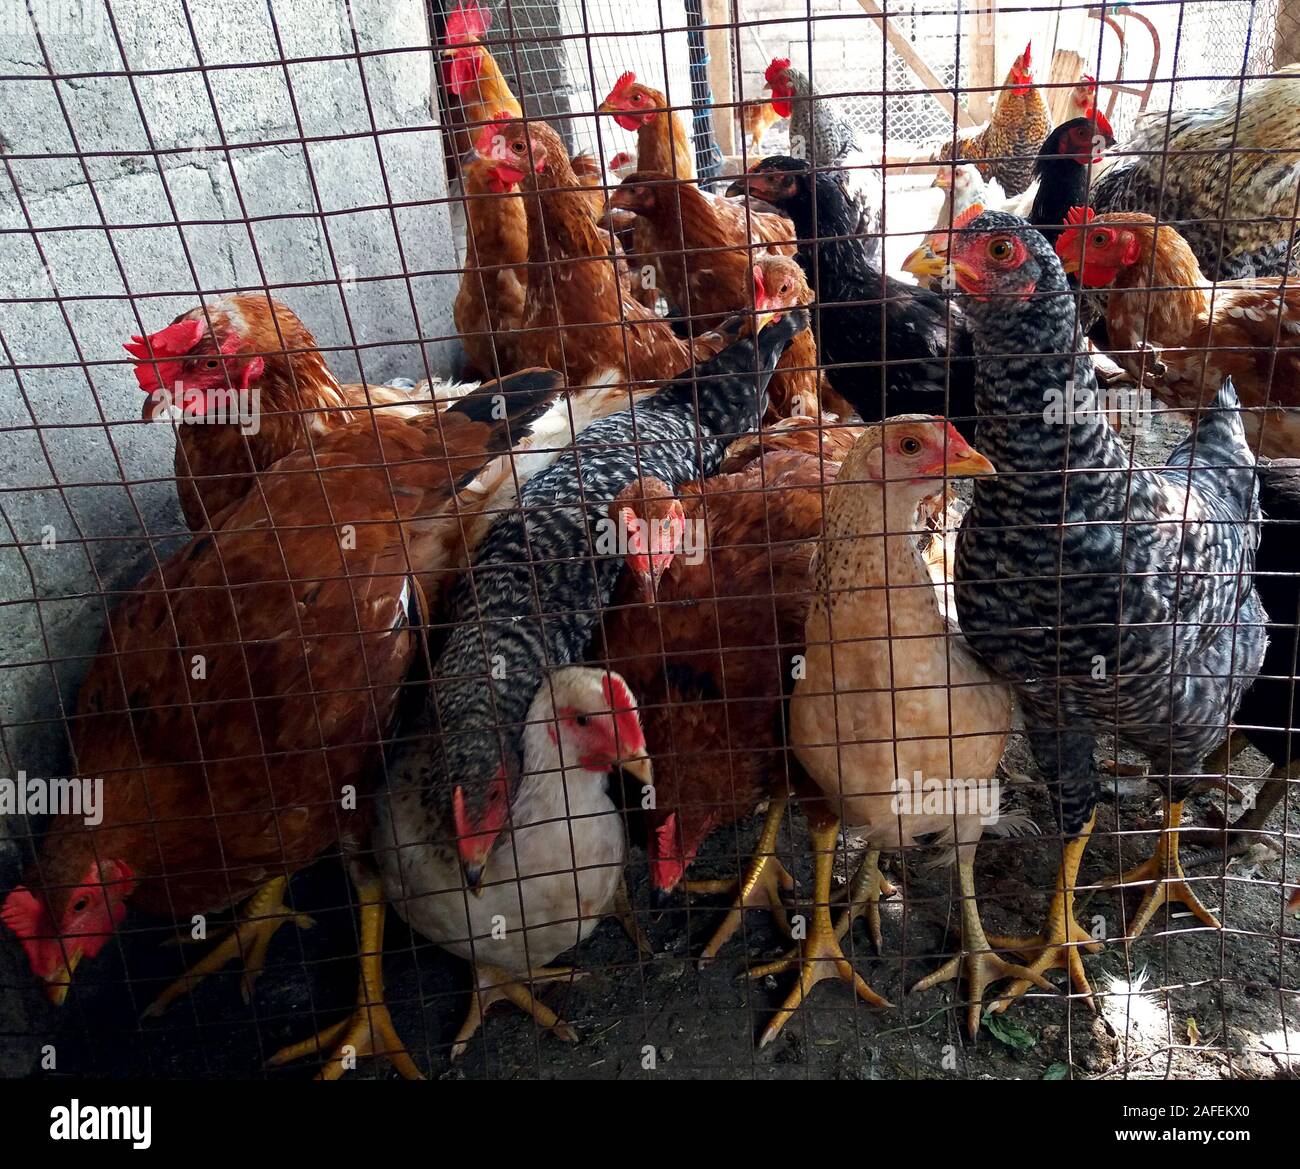 Un grand nombre de poules s'attendent à leur donner de la nourriture Banque D'Images